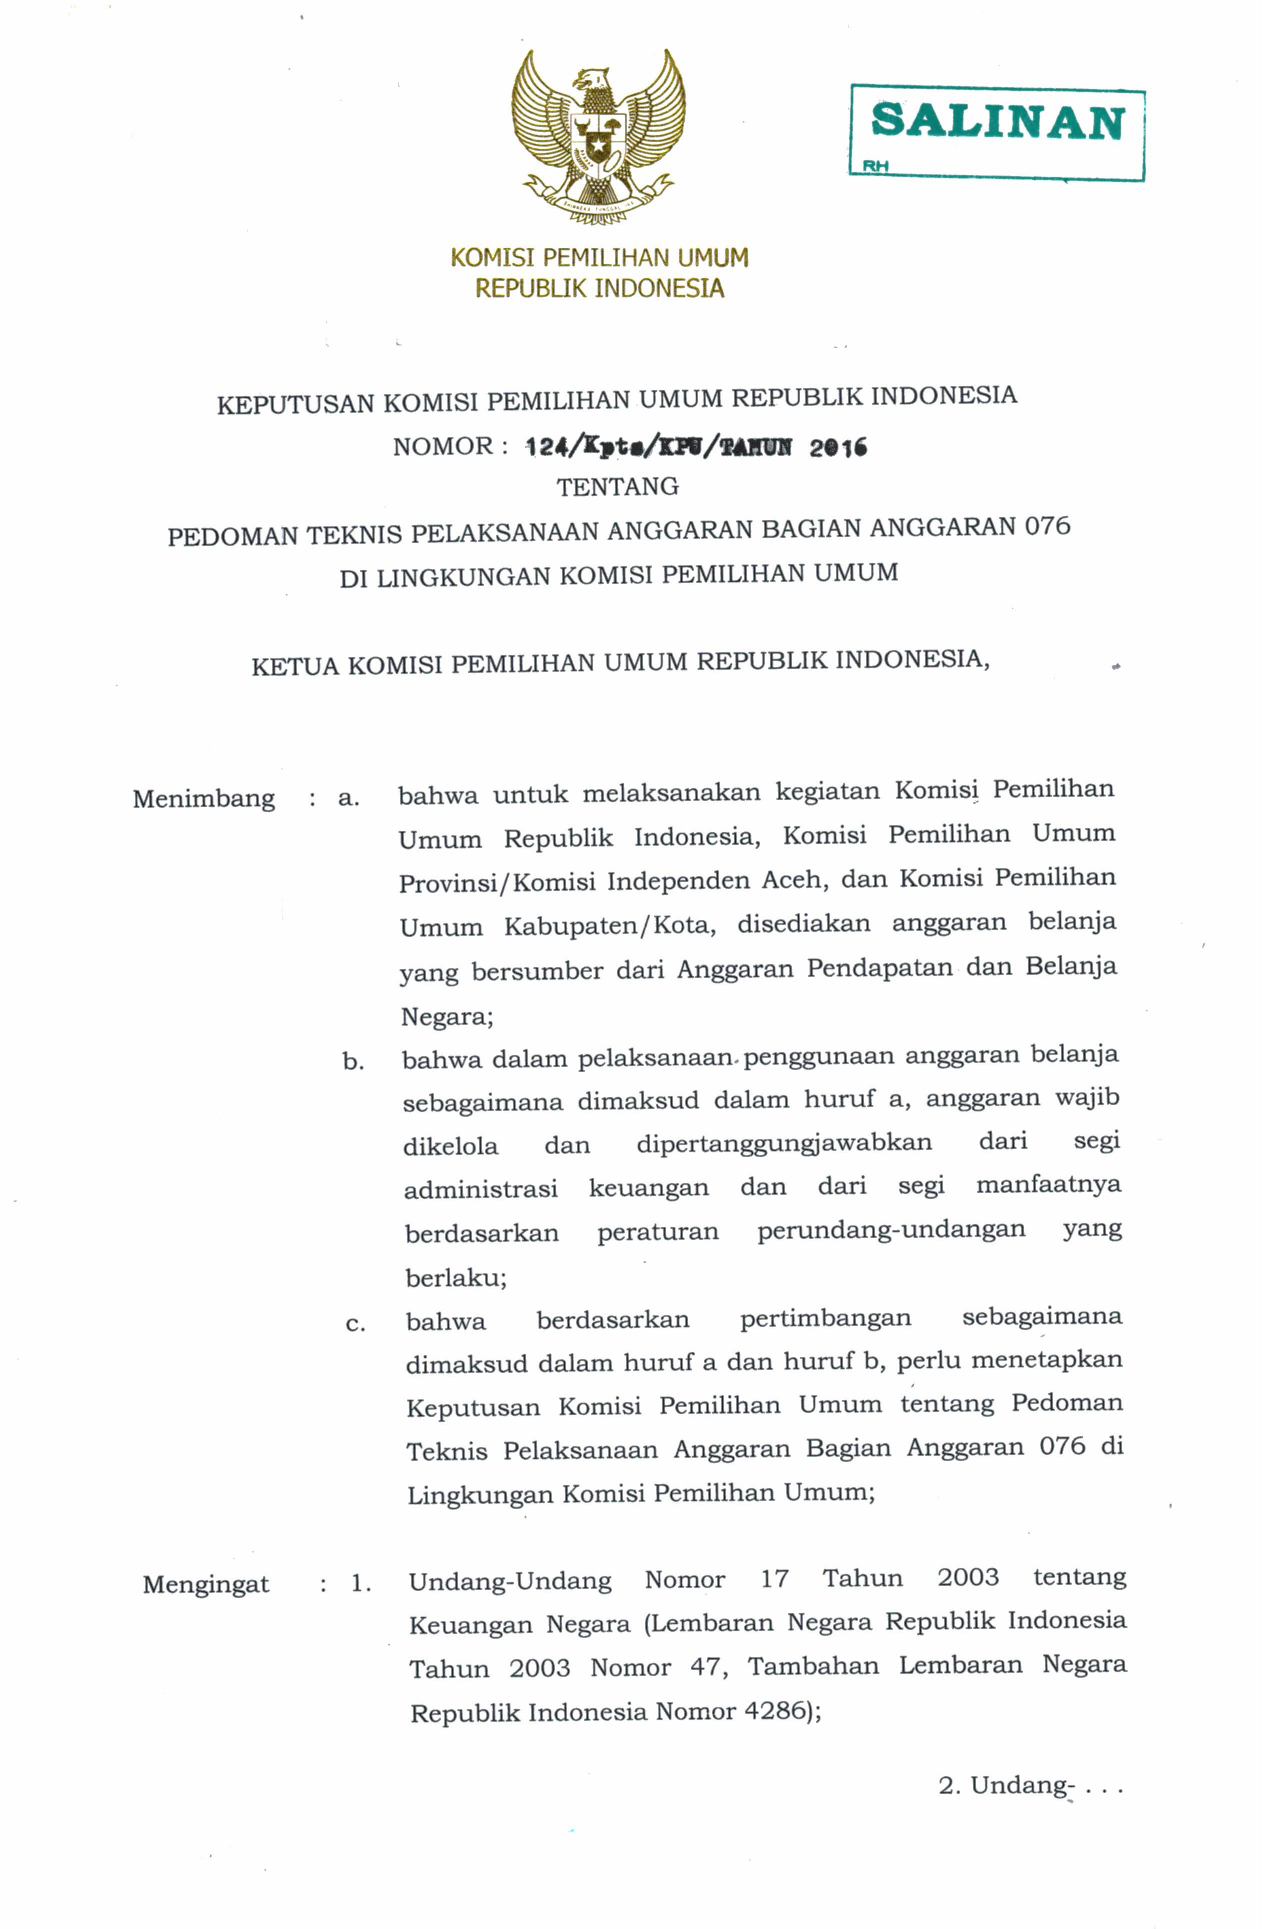 Undang Undang Nomor Perbendaharaan Negara 1 Tahun Lembaran 2004 tentang Negara Republik Indonesia Tahun 2004 Nomor 5 Tambahan Lembaran Negara Republik